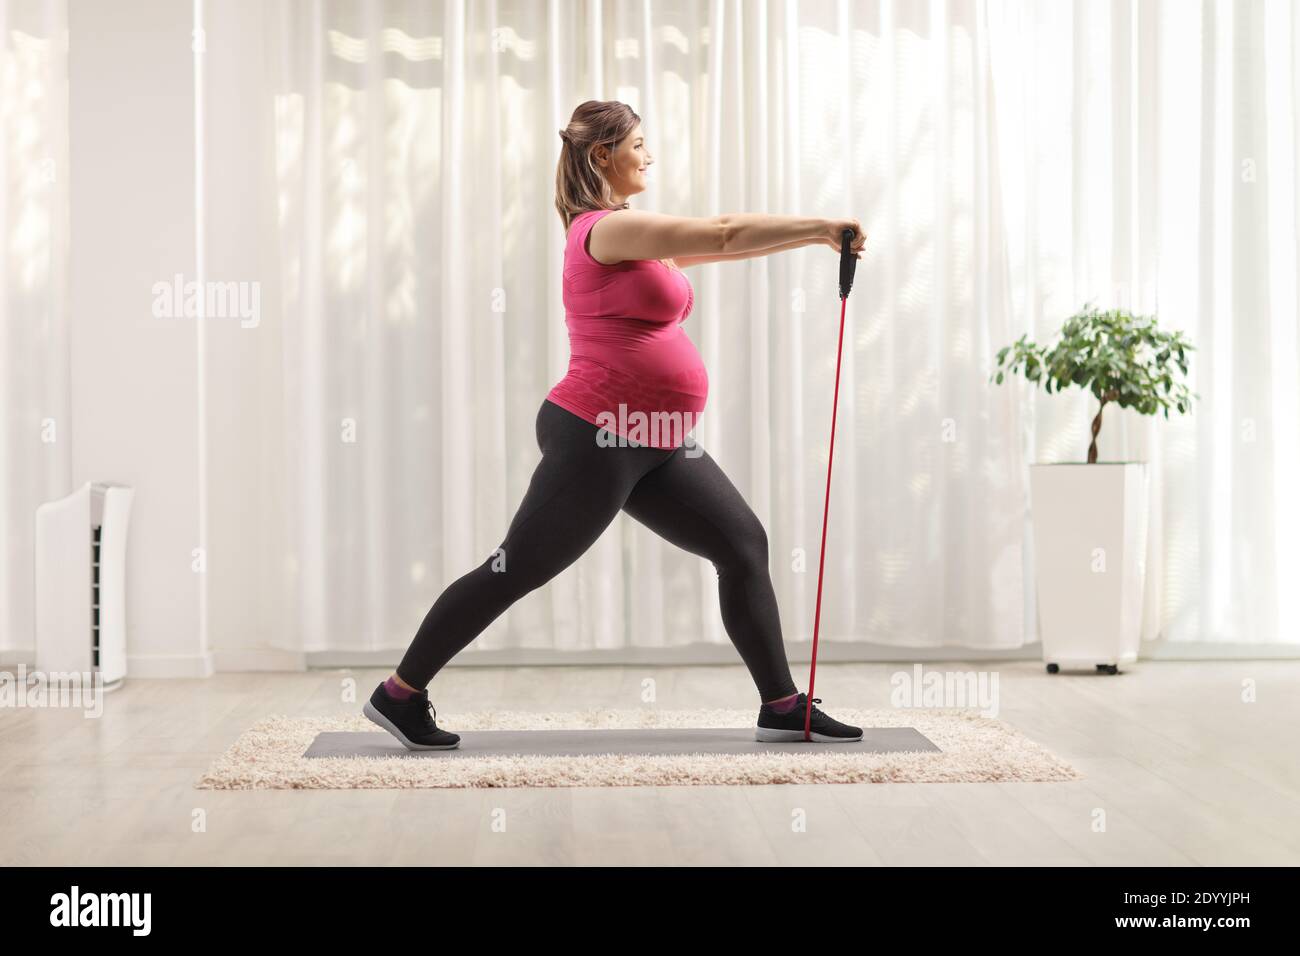 Mujer embarazada haciendo ejercicios de pilates con una banda